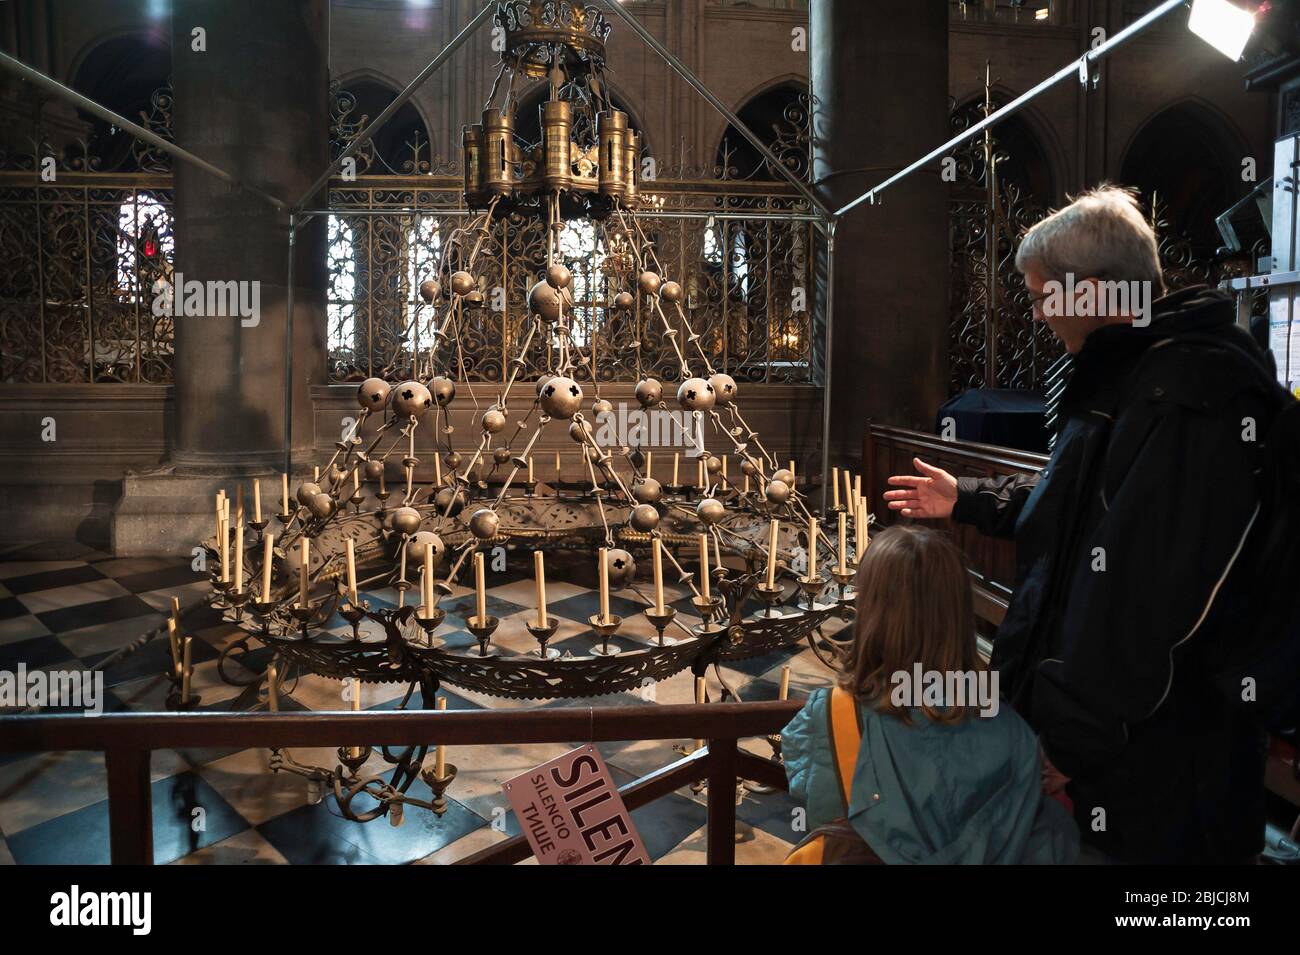 Kronleuchter Kathedrale Notre Dame, ein Vater zeigt seiner Tochter den großen Kronleuchter oder die "Krone des Lichts" in der Kathedrale Notre Dame, Paris, Frankreich Stockfoto